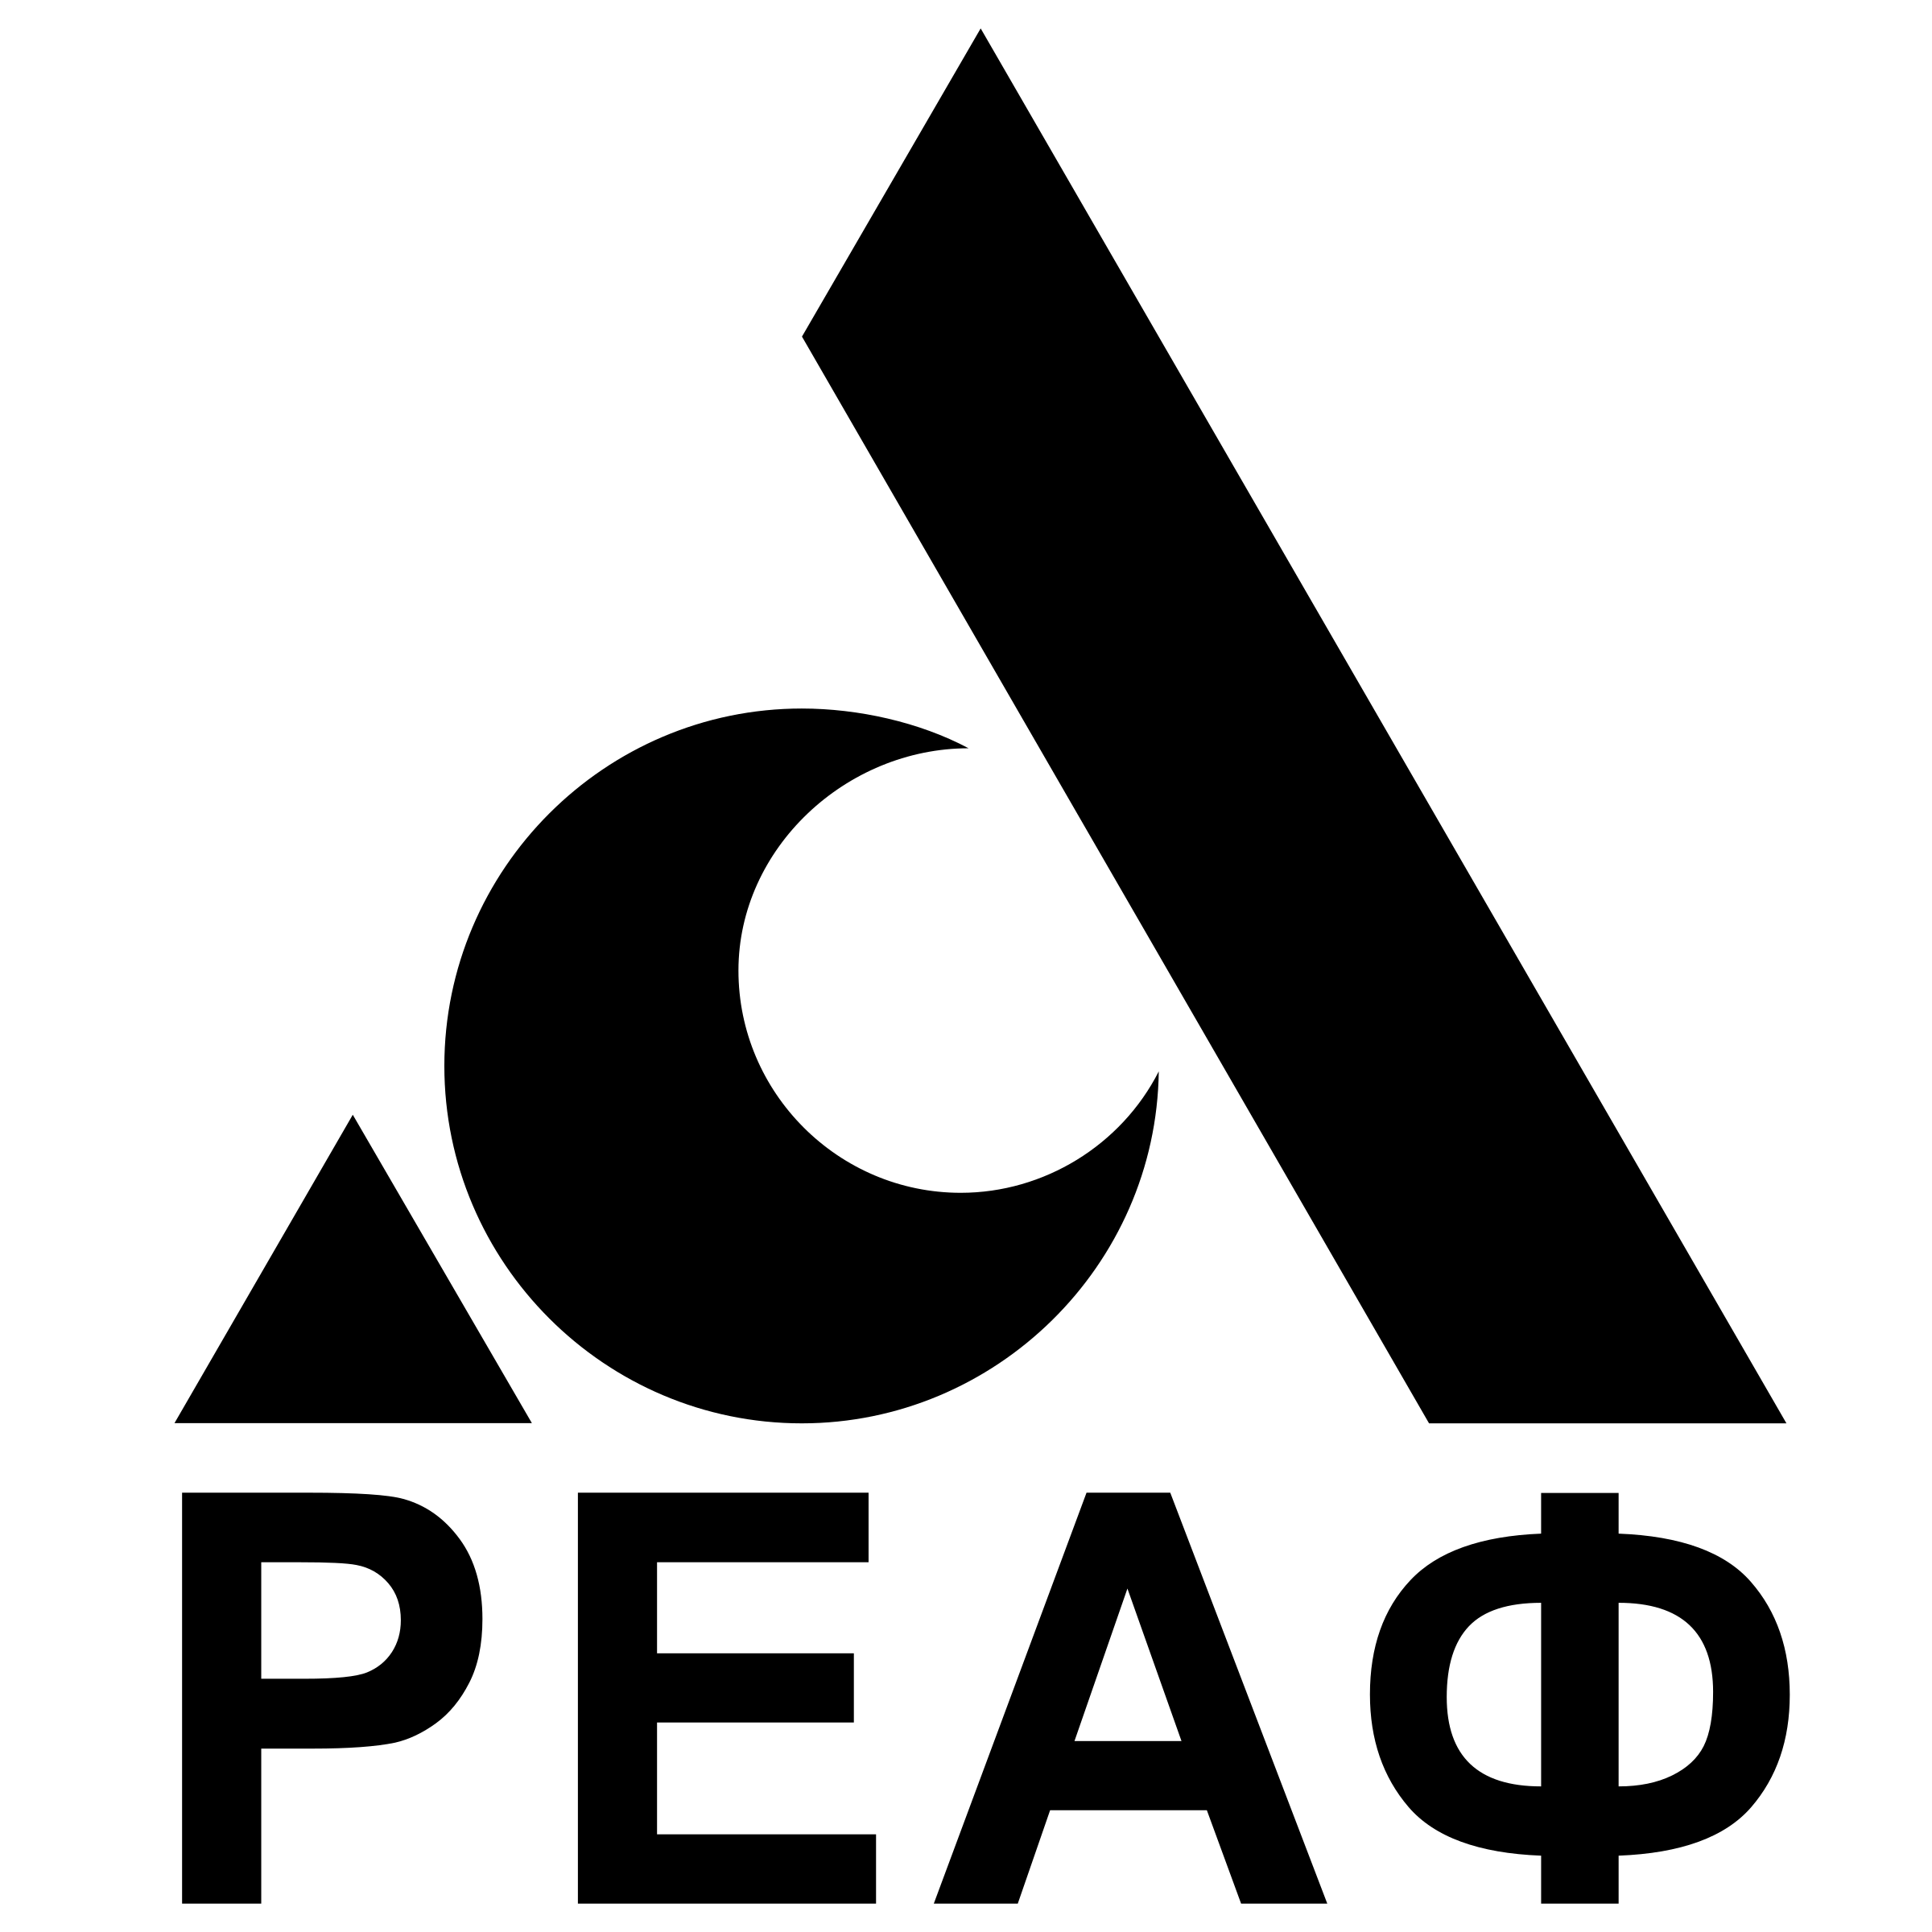 Reaf Logo - Reaf Logo PNG Transparent & SVG Vector - Freebie Supply